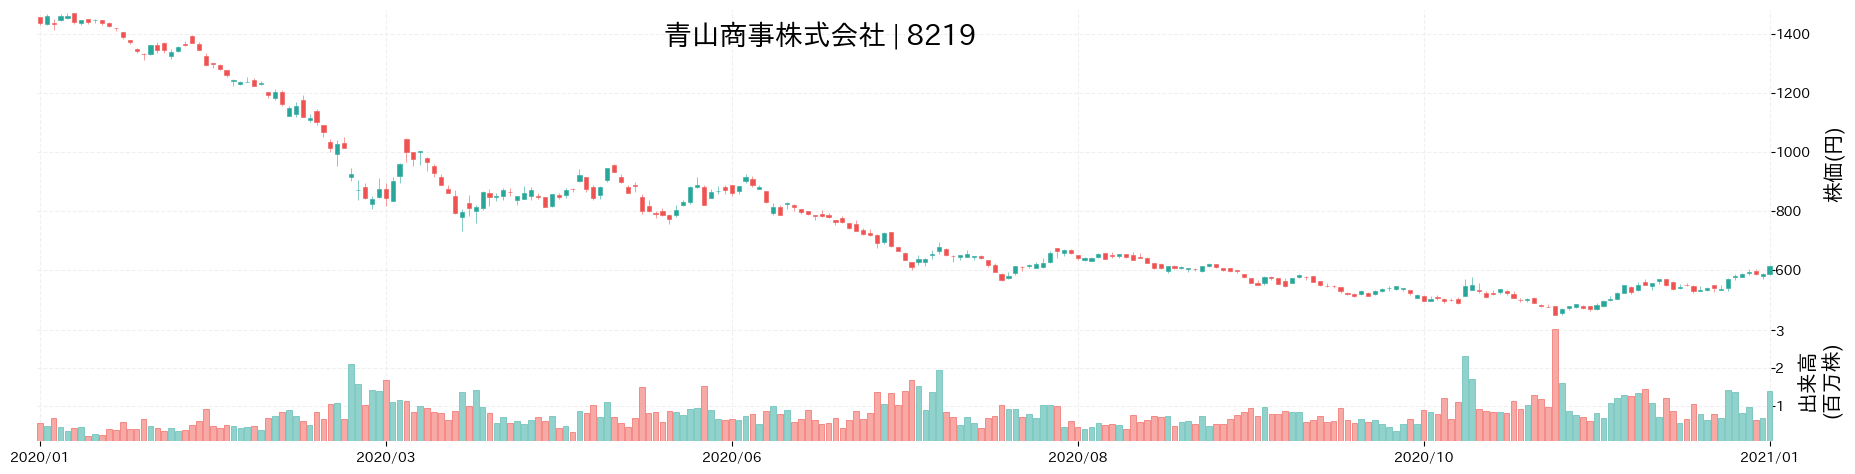 青山商事の株価推移(2020)